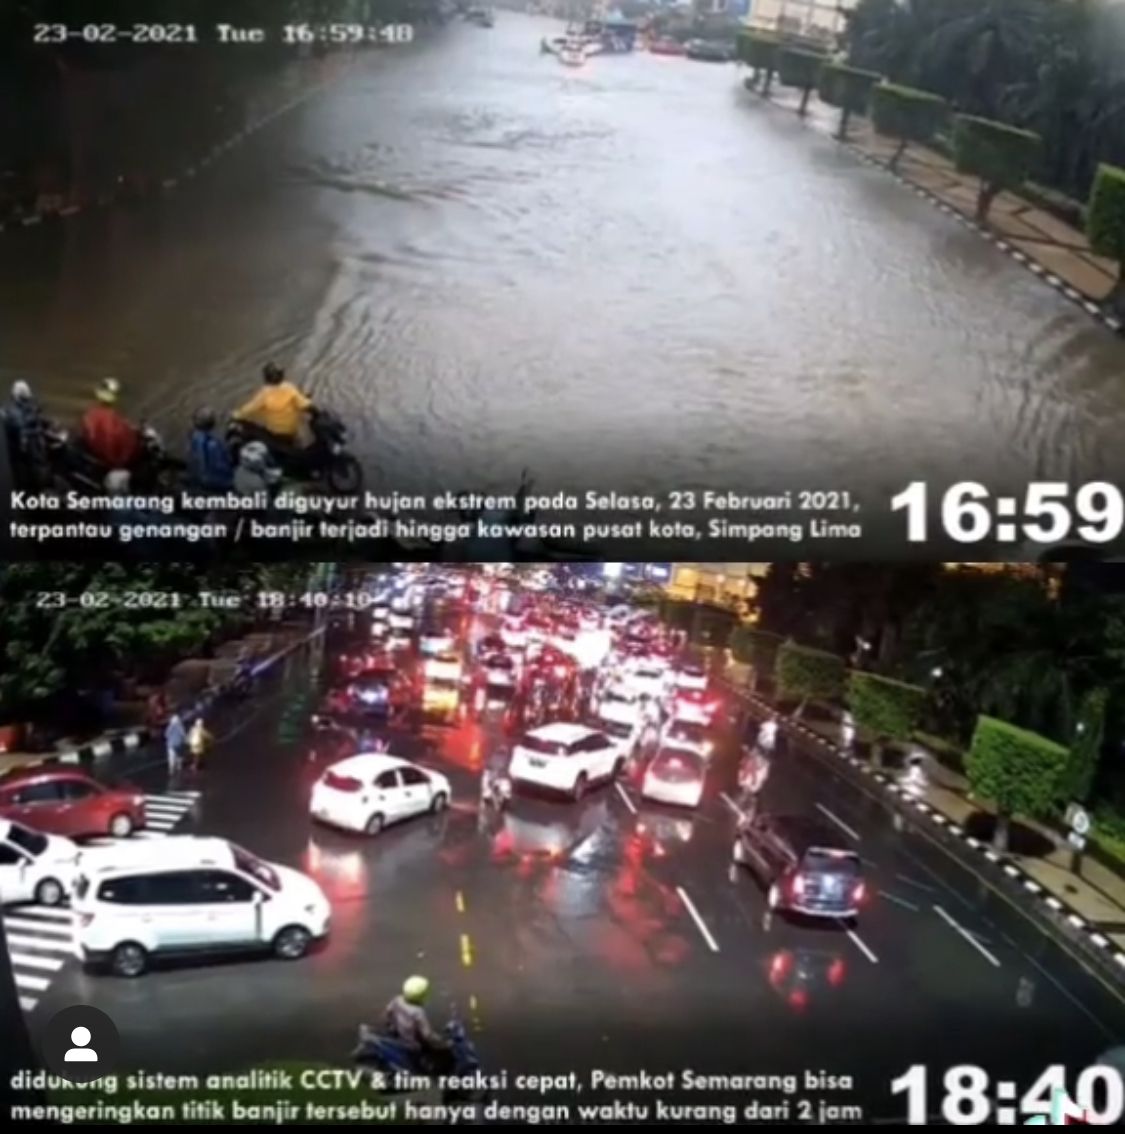 Kondisi memperlihatkan suasana kawasan simpang lima saat banjir dan surut, Selasa 23 Februari 2021